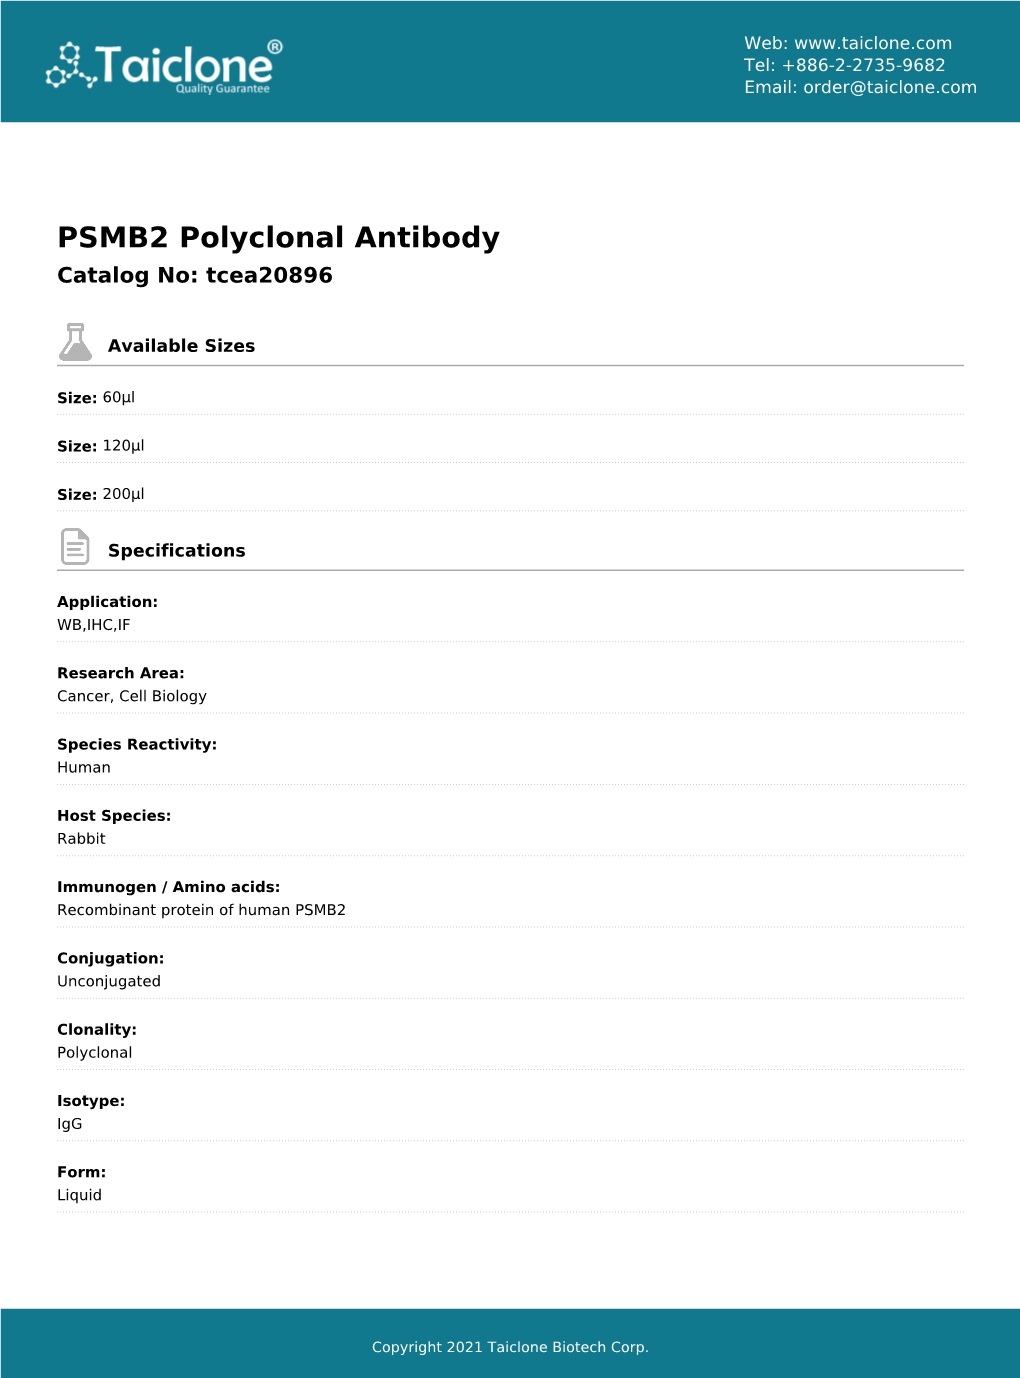 PSMB2 Polyclonal Antibody Catalog No: Tcea20896